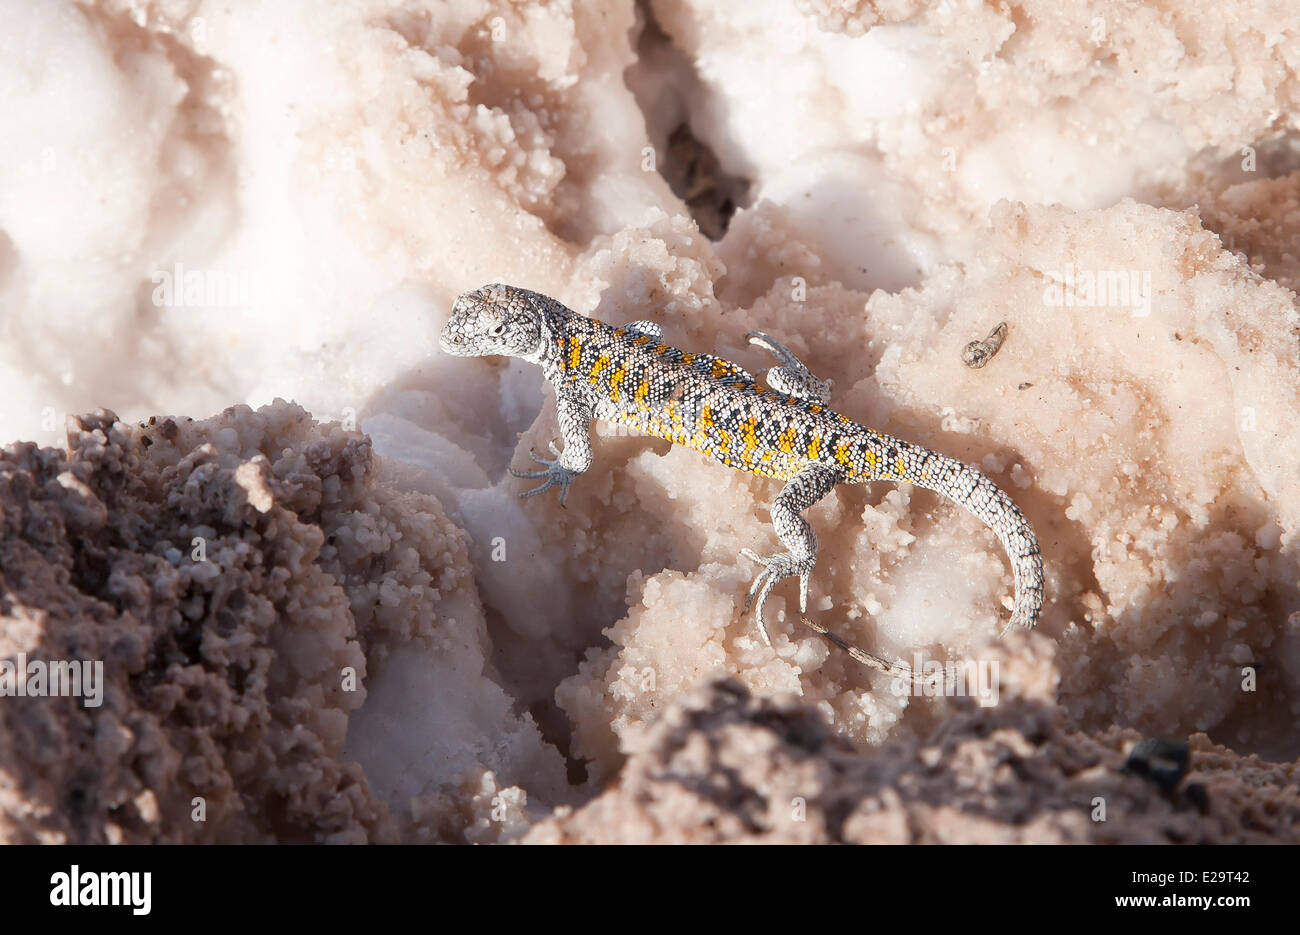 Chile, Antofagasta region, San Pedro de Atacama, Atacama salar, lizard in the Chaxca laguna Stock Photo